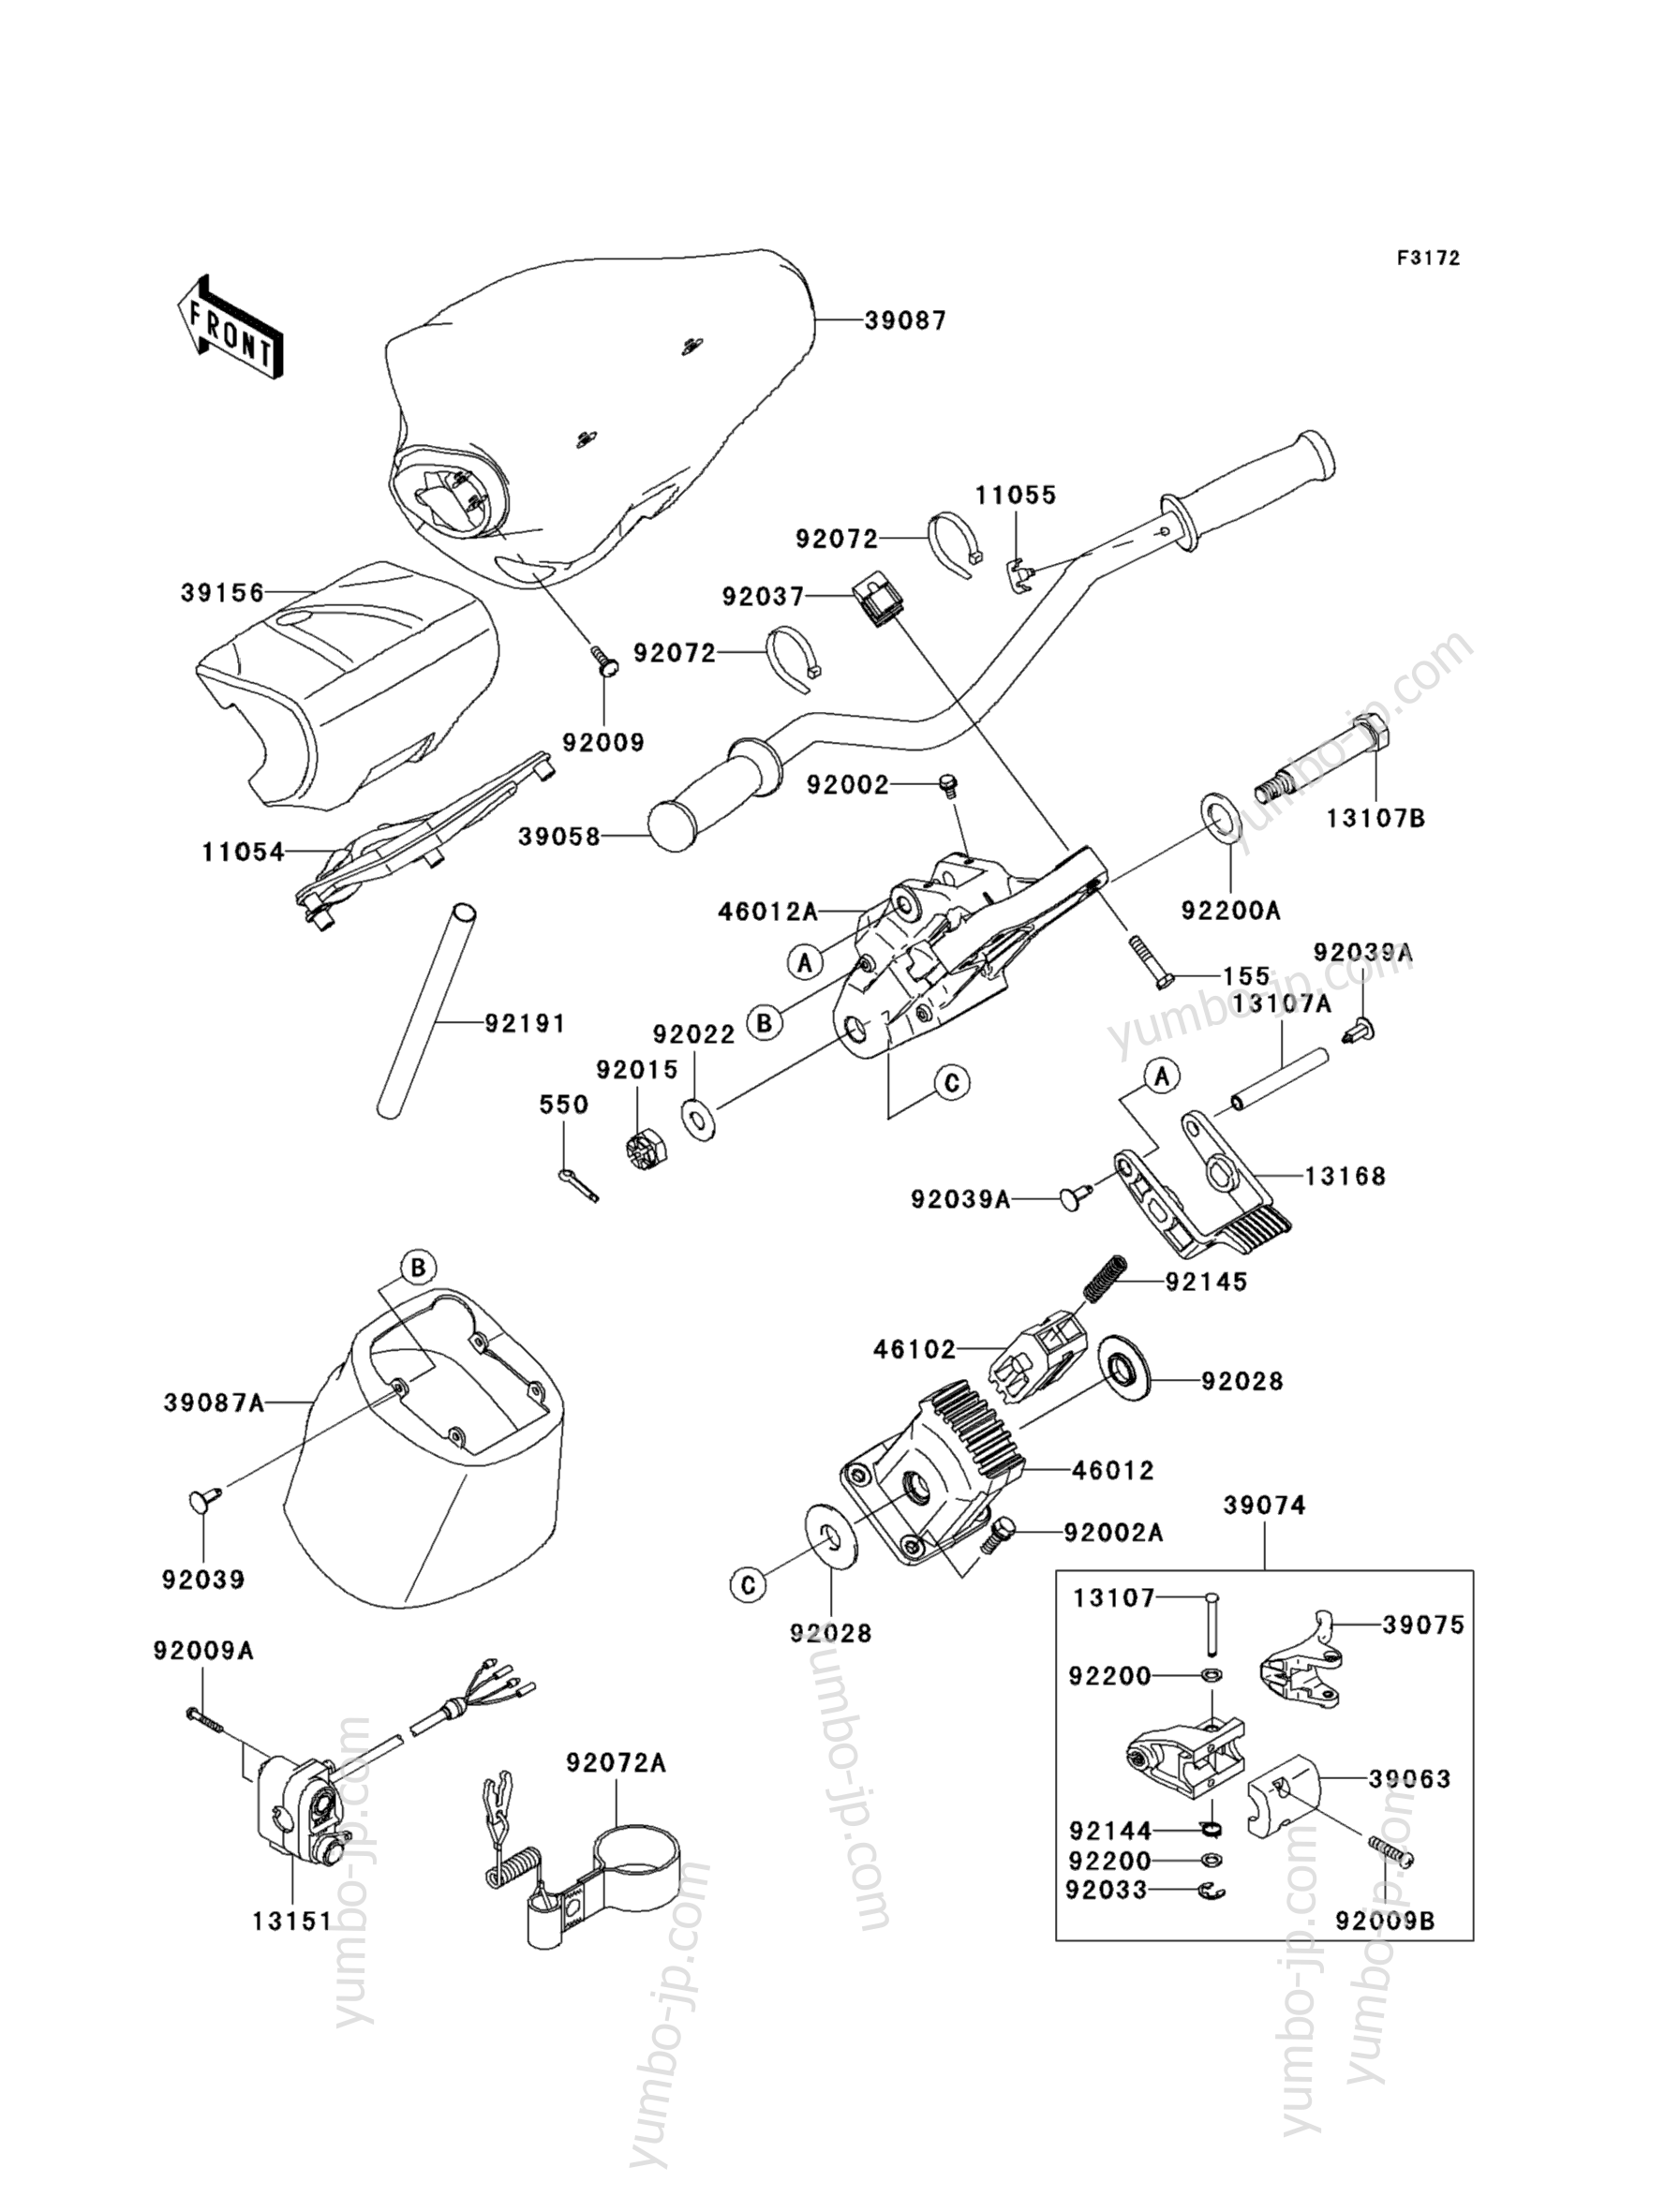 Румпель (рукоятка управления) для гидроциклов KAWASAKI JET SKI ULTRA LX (JT1500G9F) 2009 г.